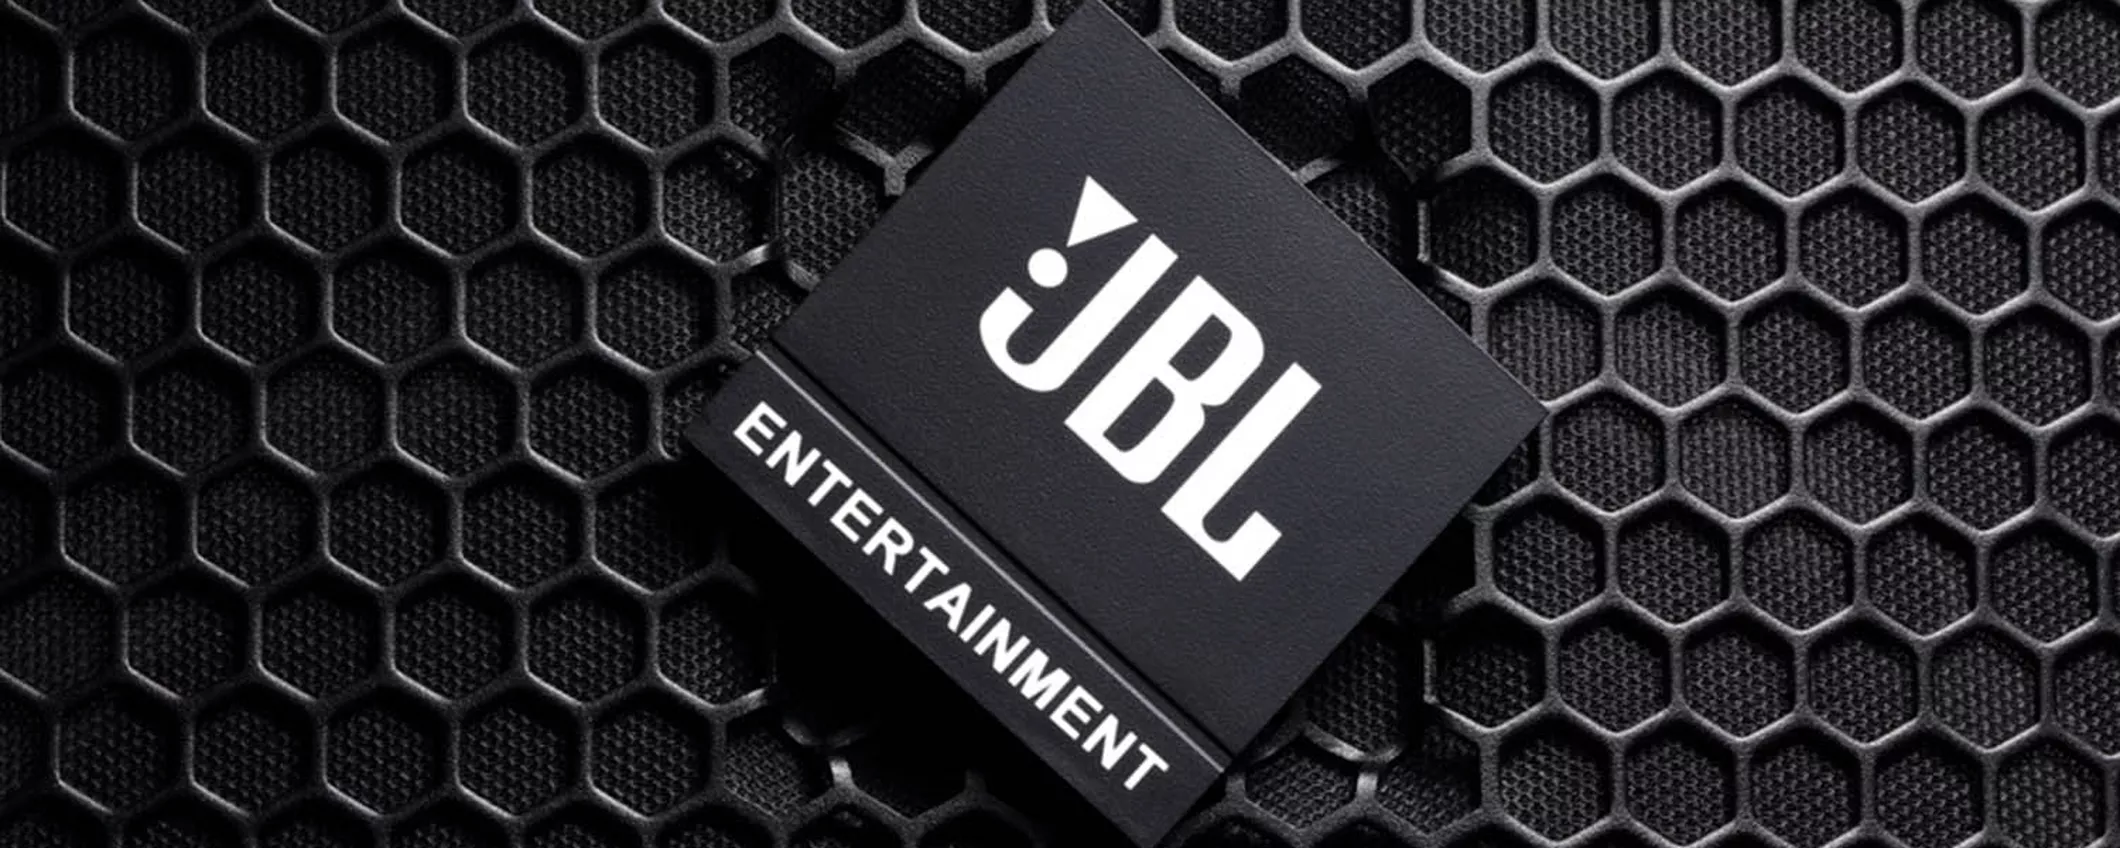 JBL, una valanga di annunci: dalle nuove soundbar agli auricolari, fino agli speaker, ecco tutte le novità